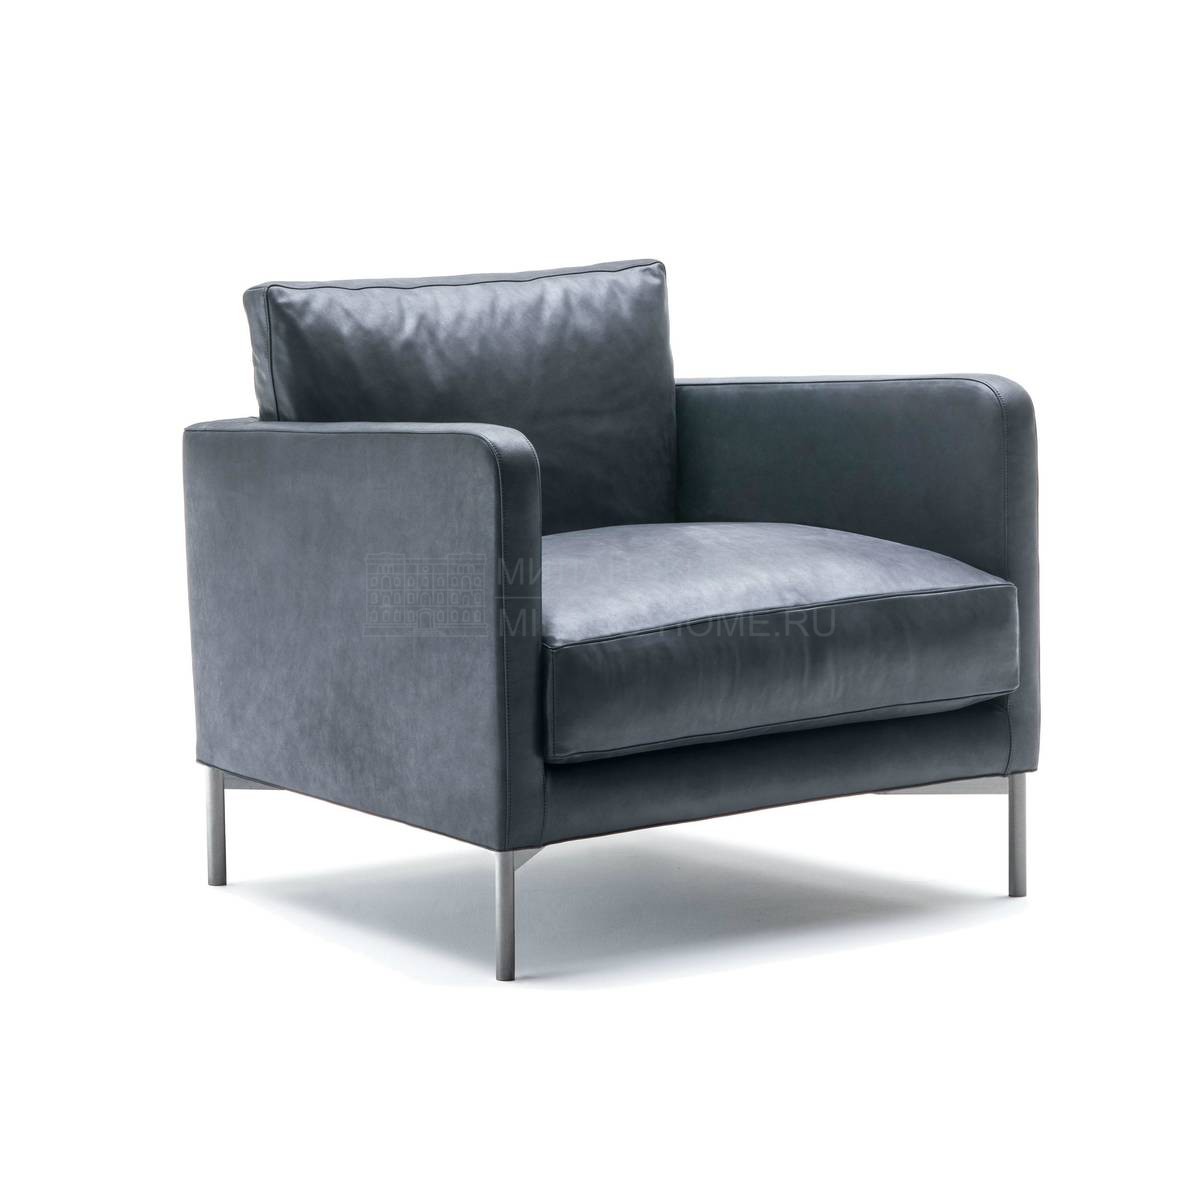 Кожаное кресло Dumas armchair leather из Италии фабрики LIVING DIVANI